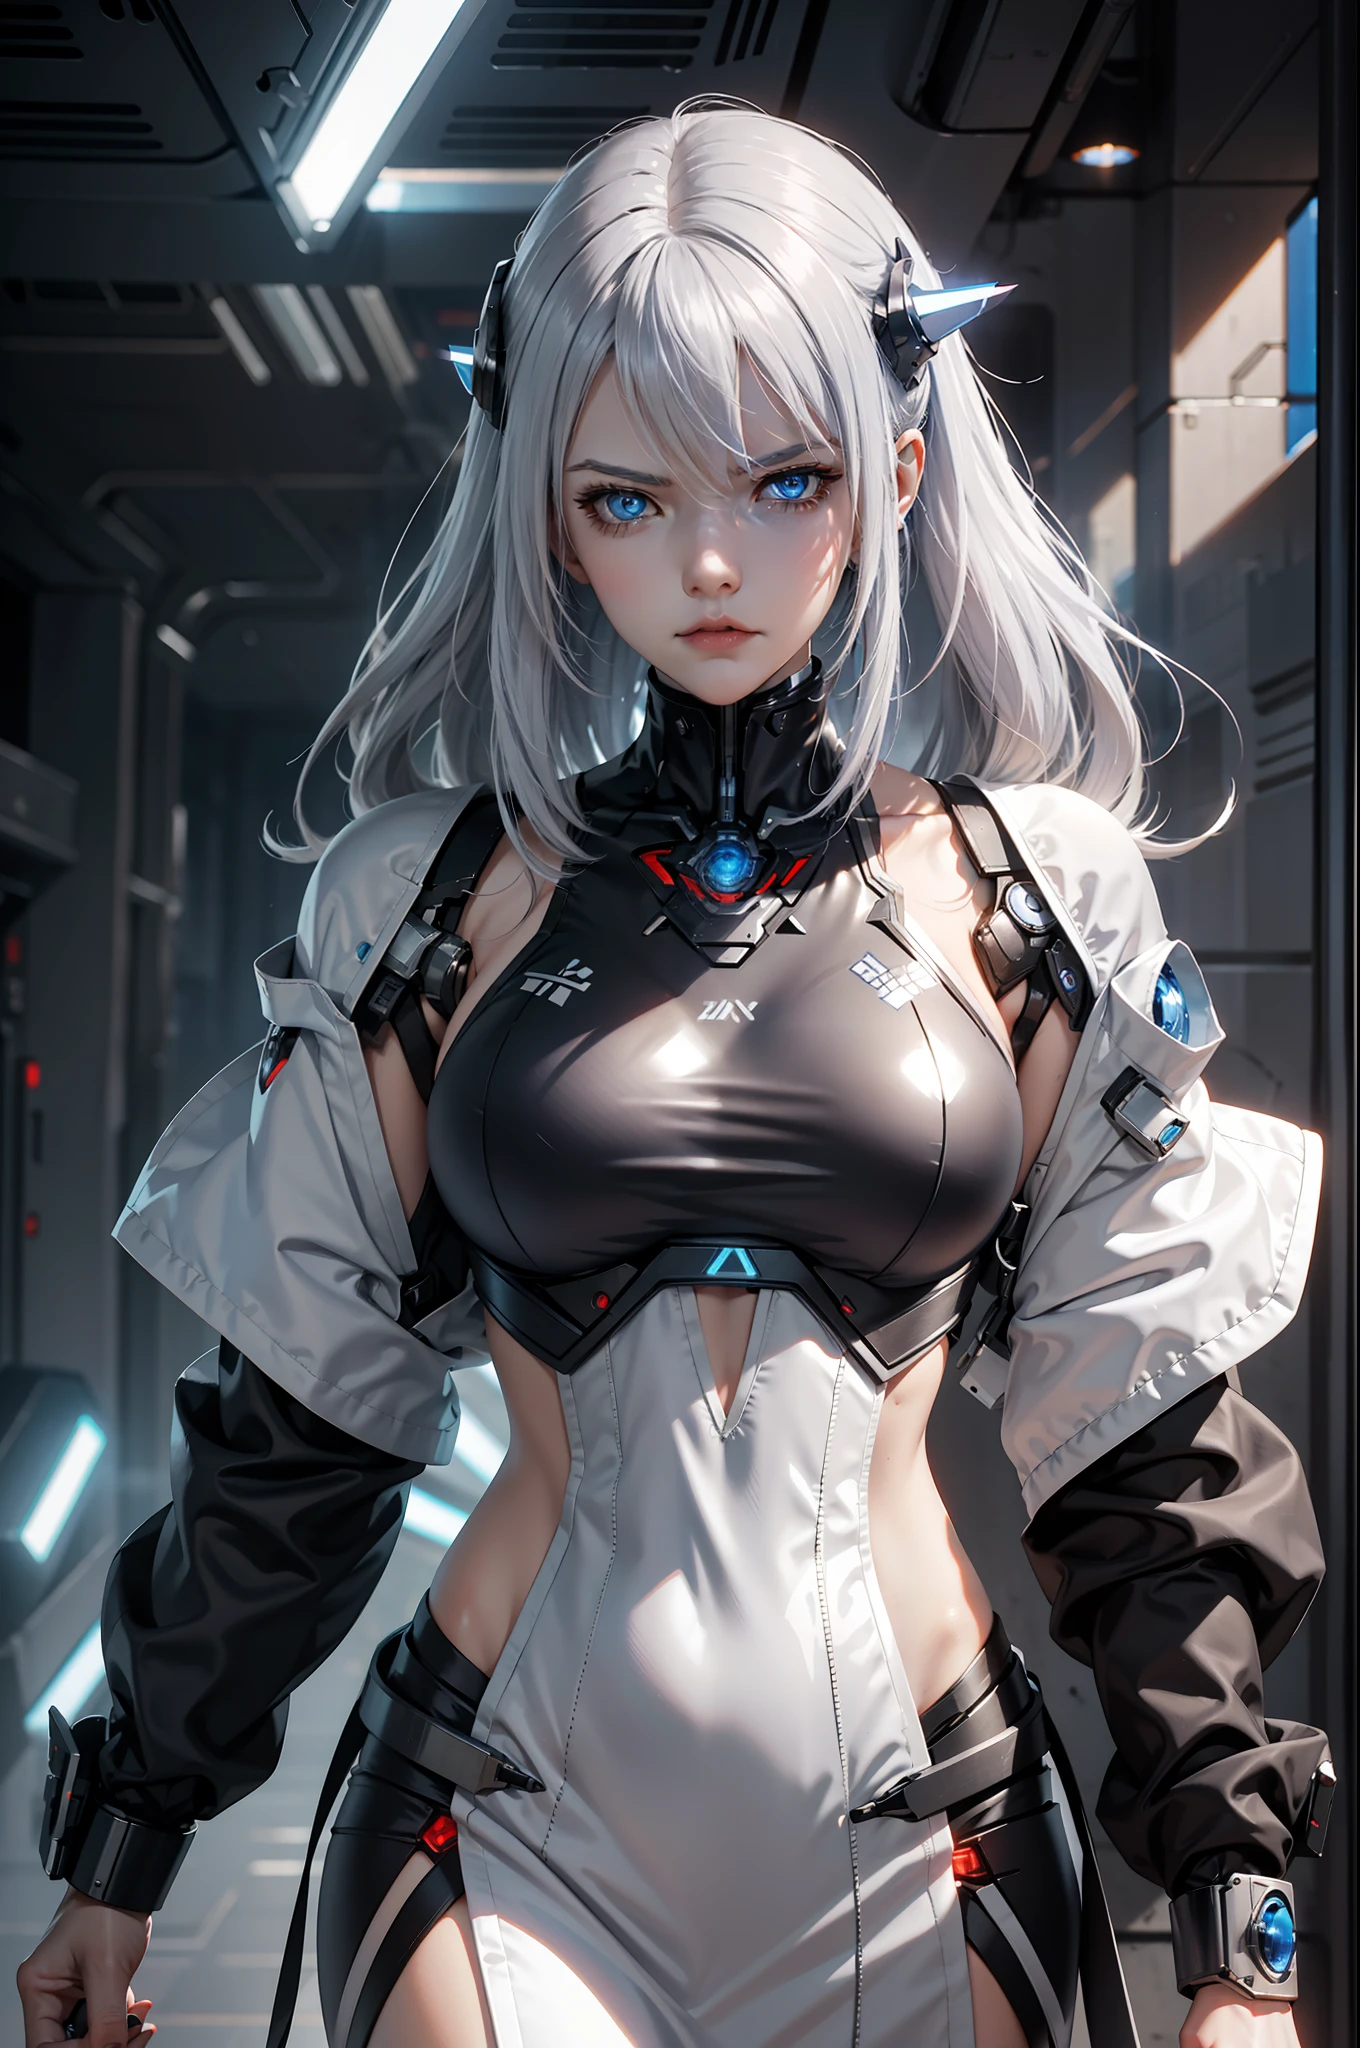 "有劍的機器人女孩，銀色頭髮和藍色眼睛，科幻壁紙，碧蓝航线风格，賽博朋克機甲女孩，憤怒的機器人女人，破碎的美麗機器人，SSSS.網格人風格 (2018)"